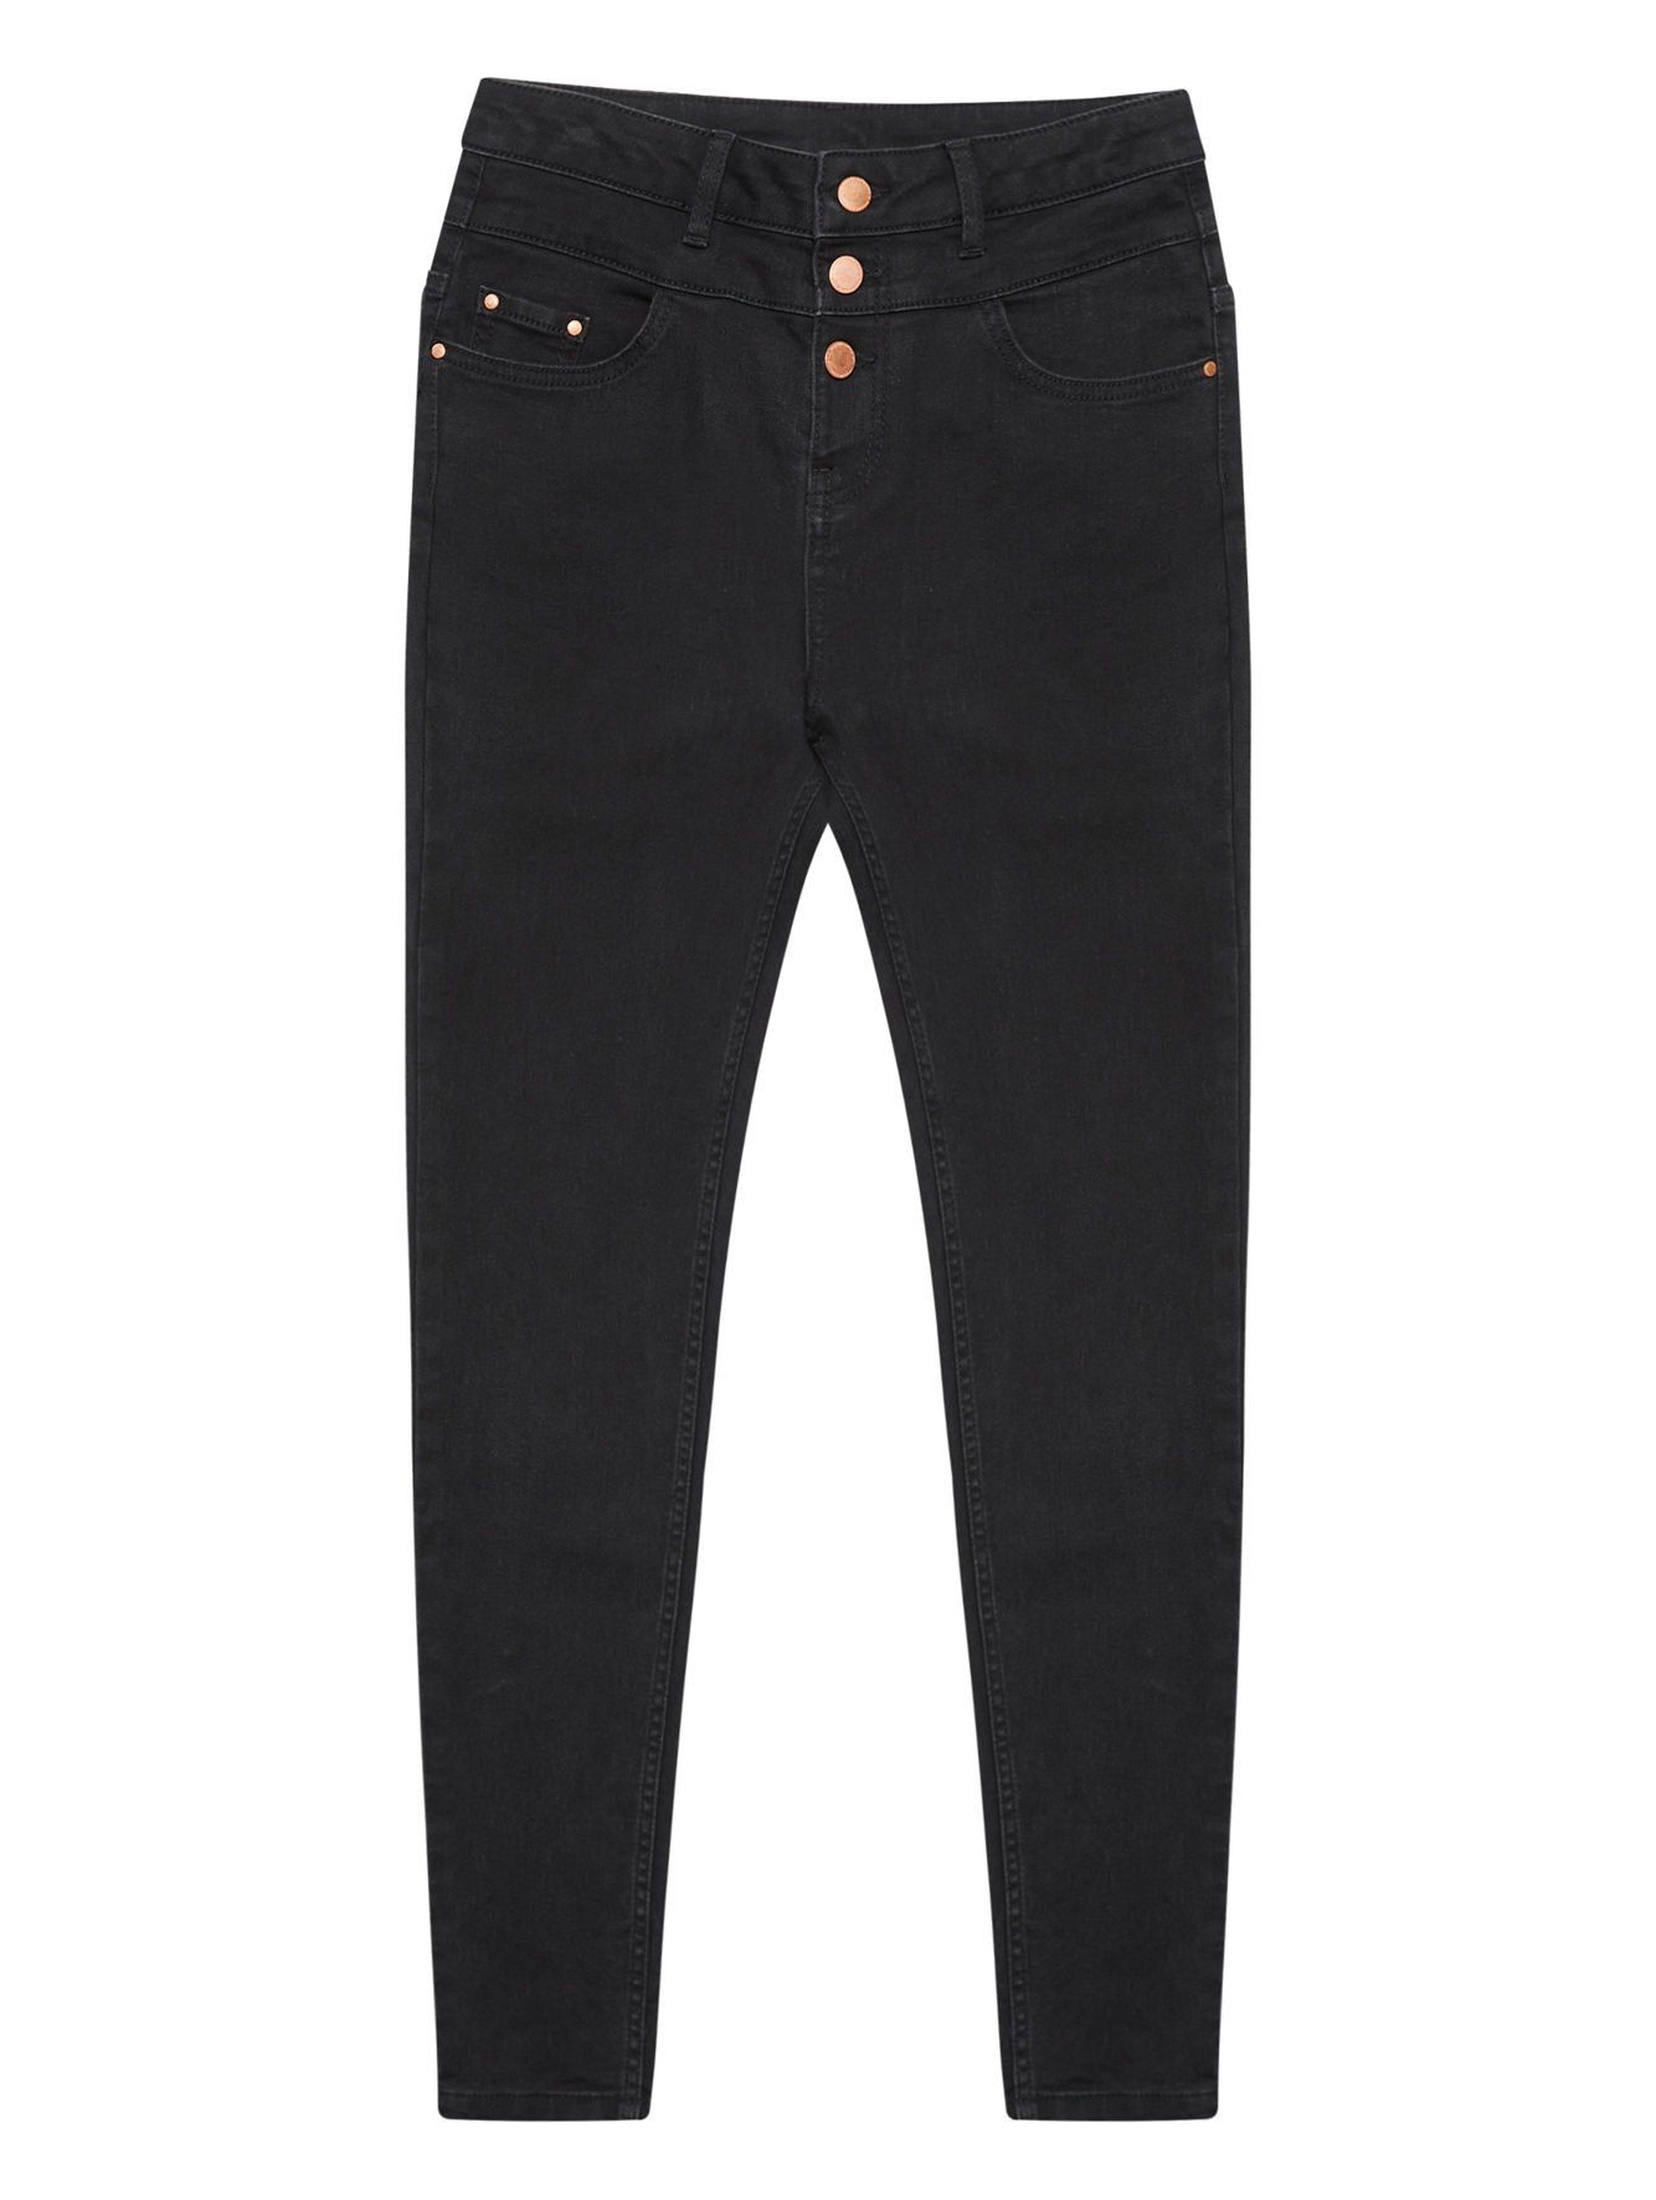 Spodnie jeansowe damskie- czarne